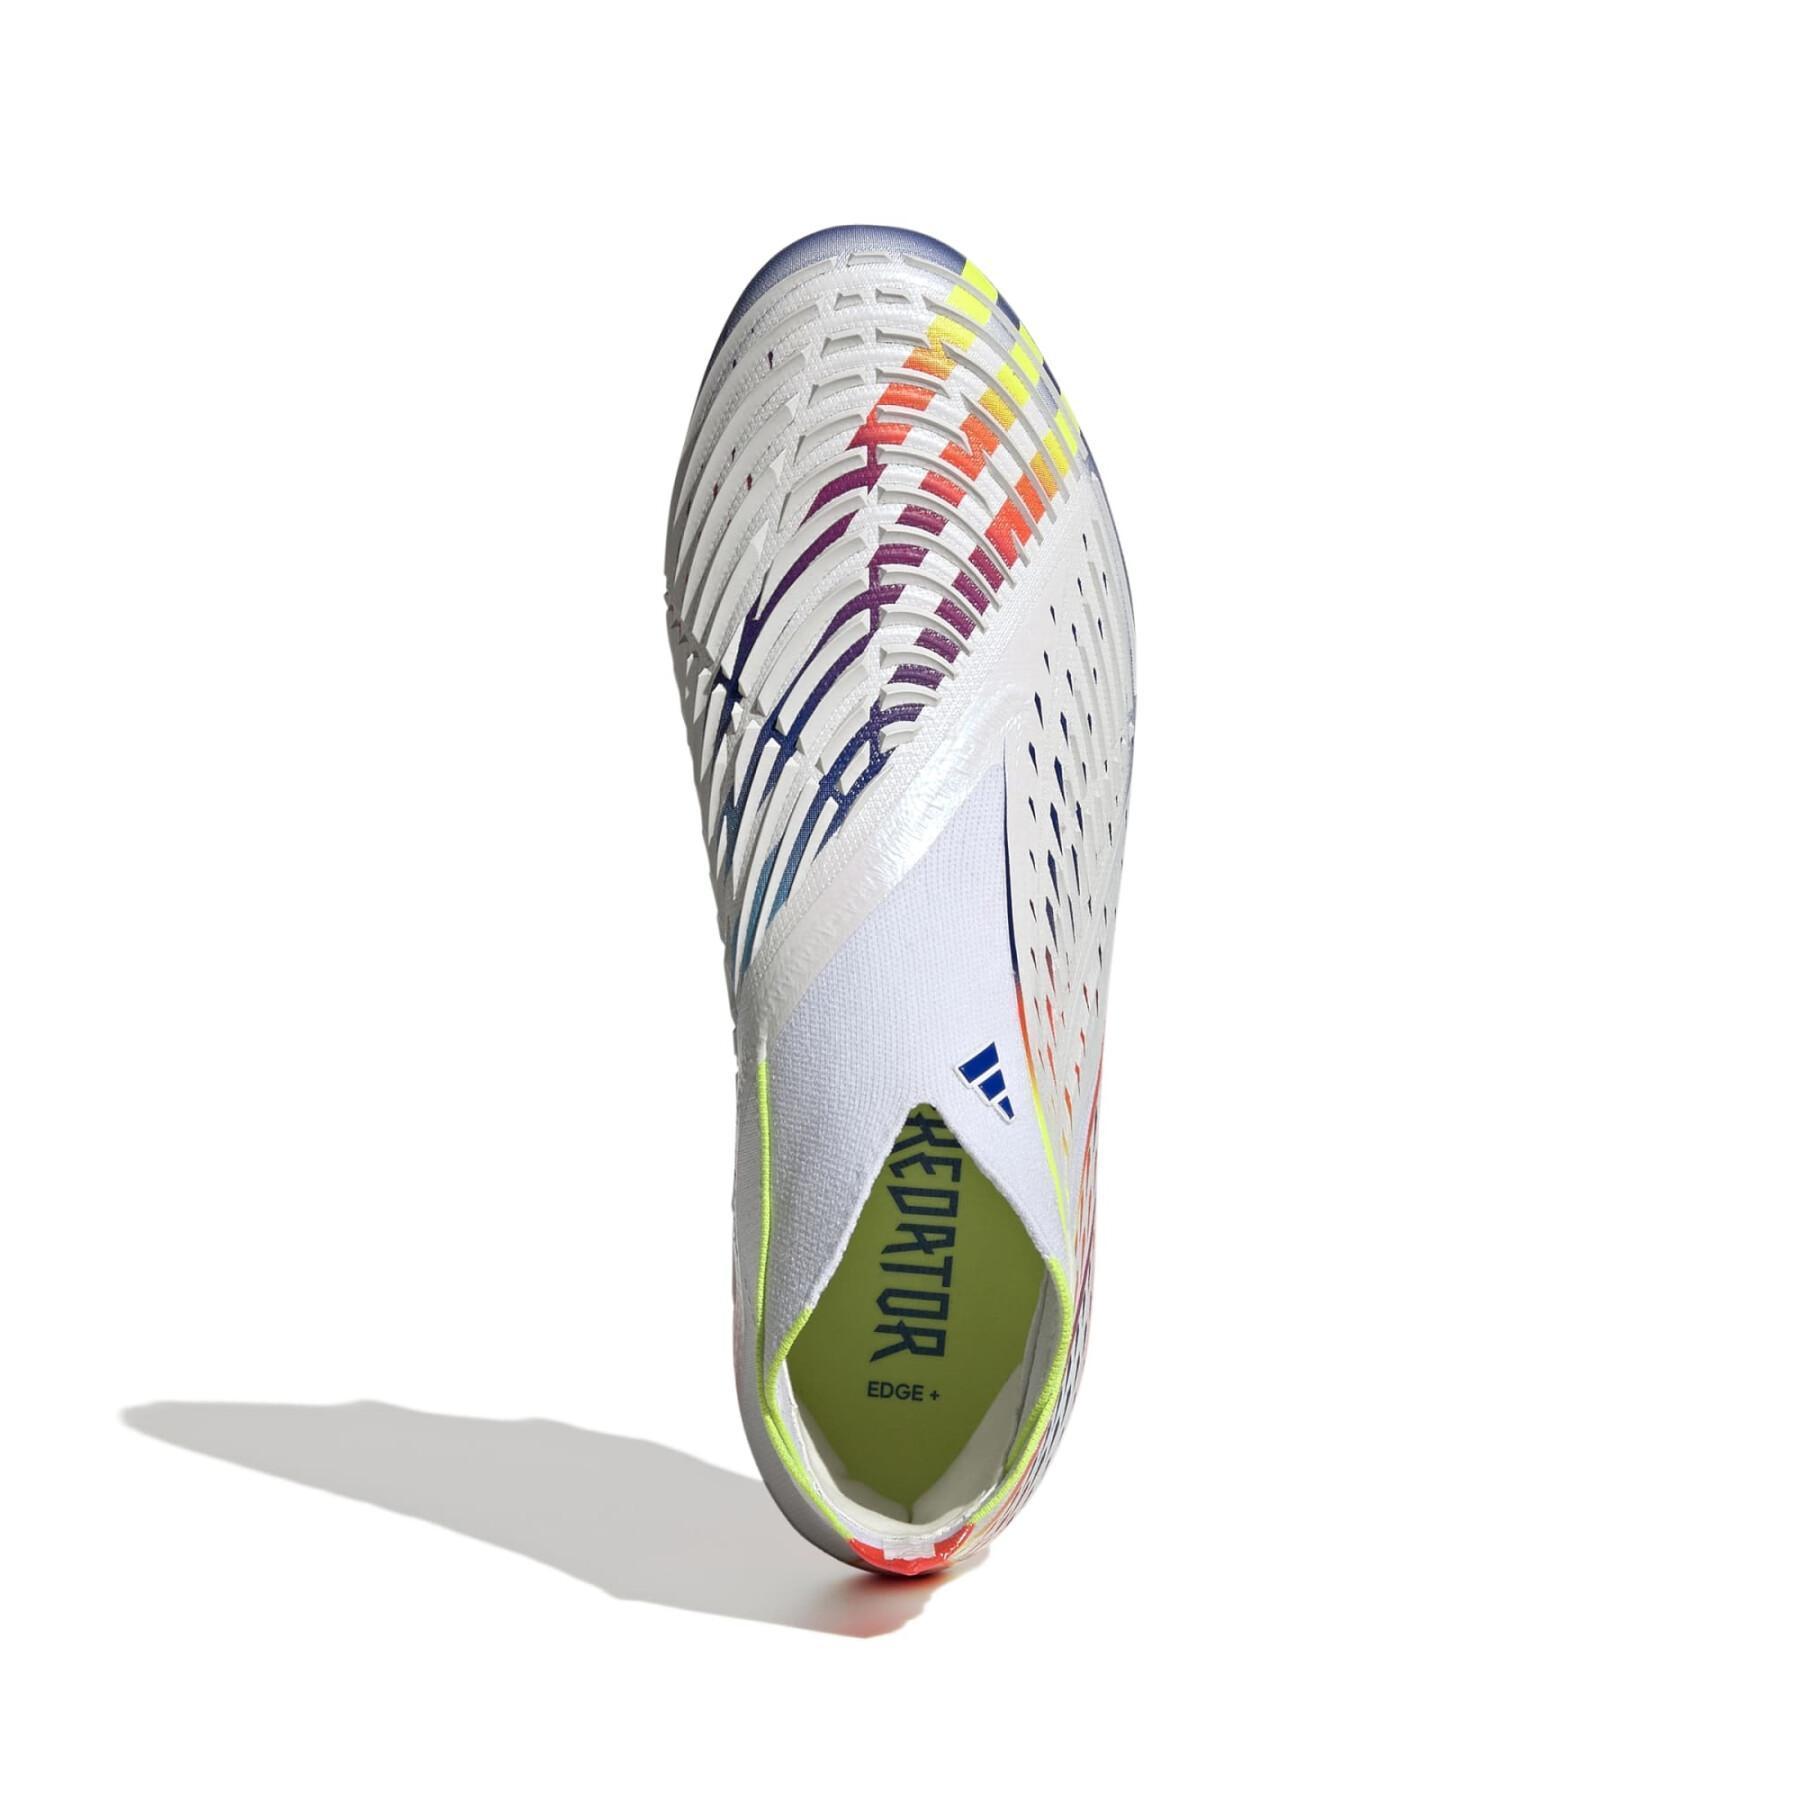 Voetbalschoenen adidas Predator Edge+ SG - Al Rihla